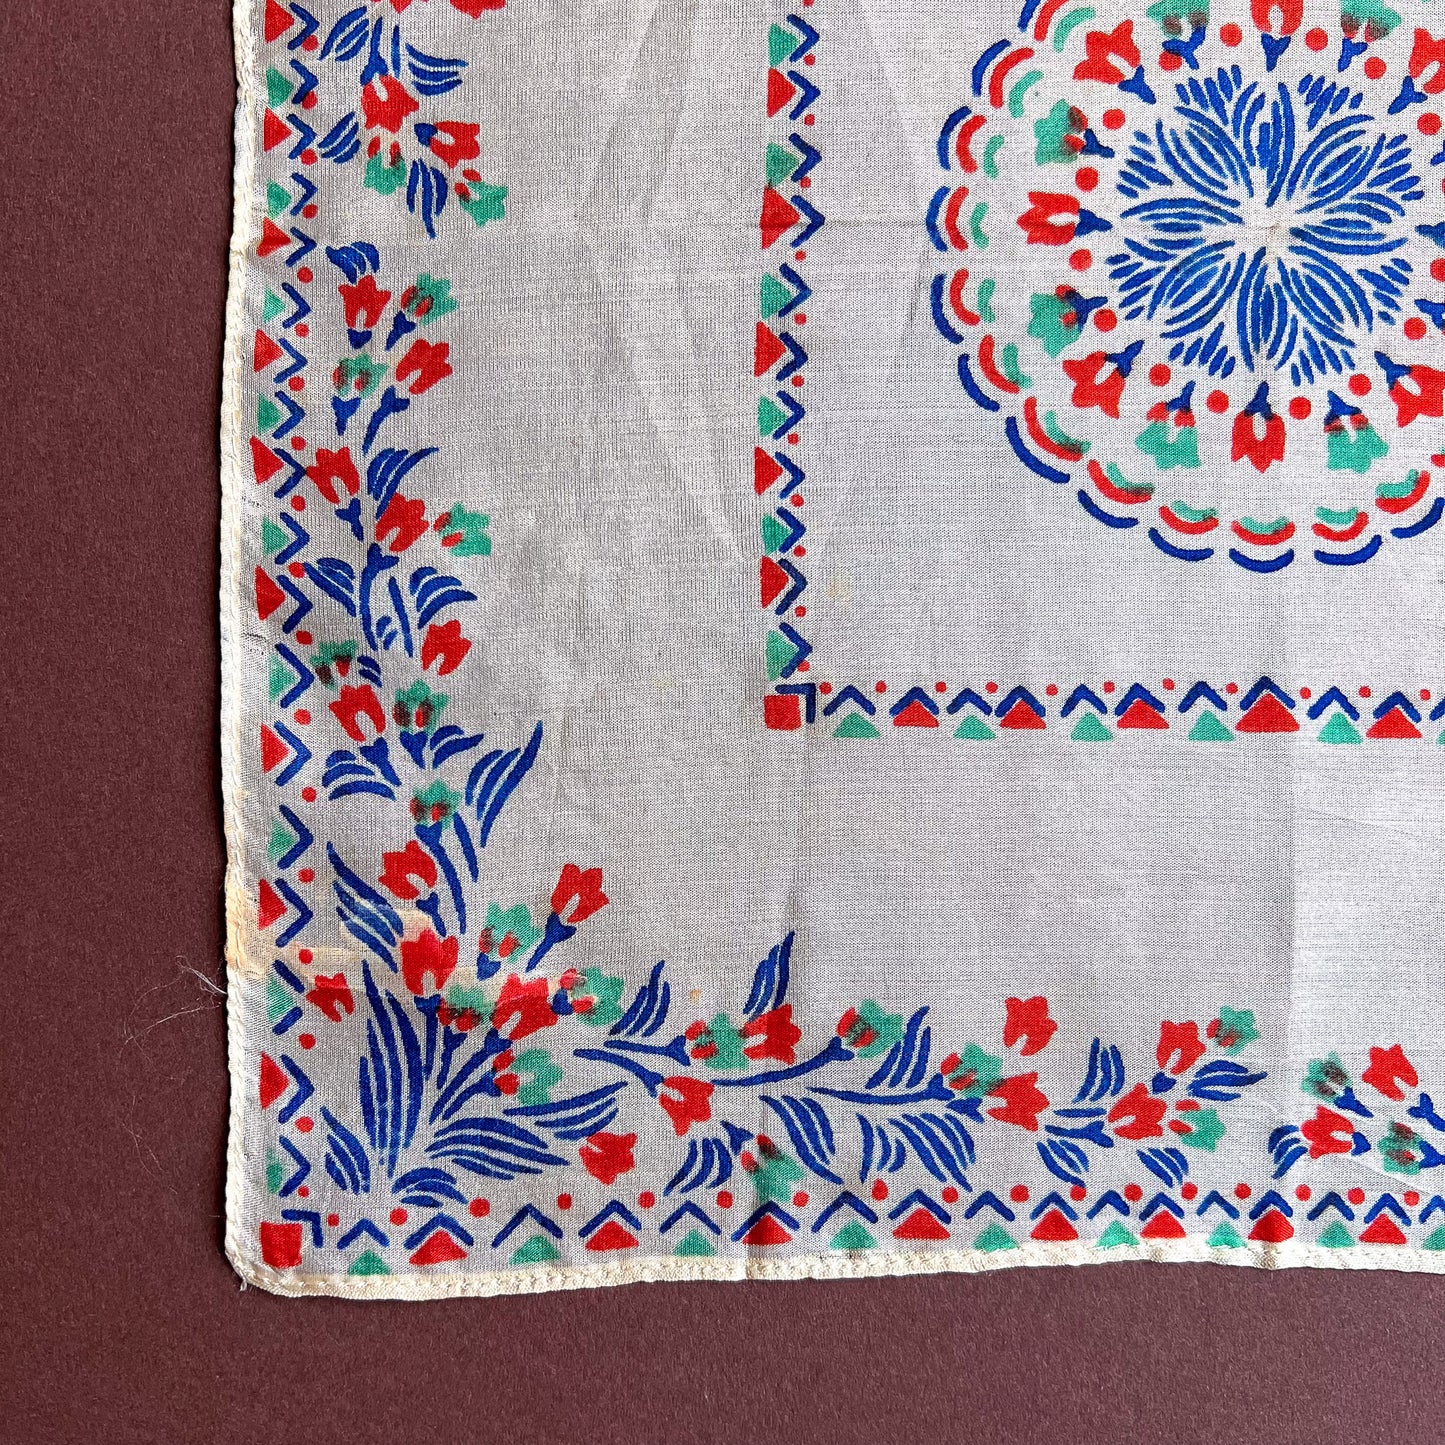 1940s White Silk Floral Handkerchief